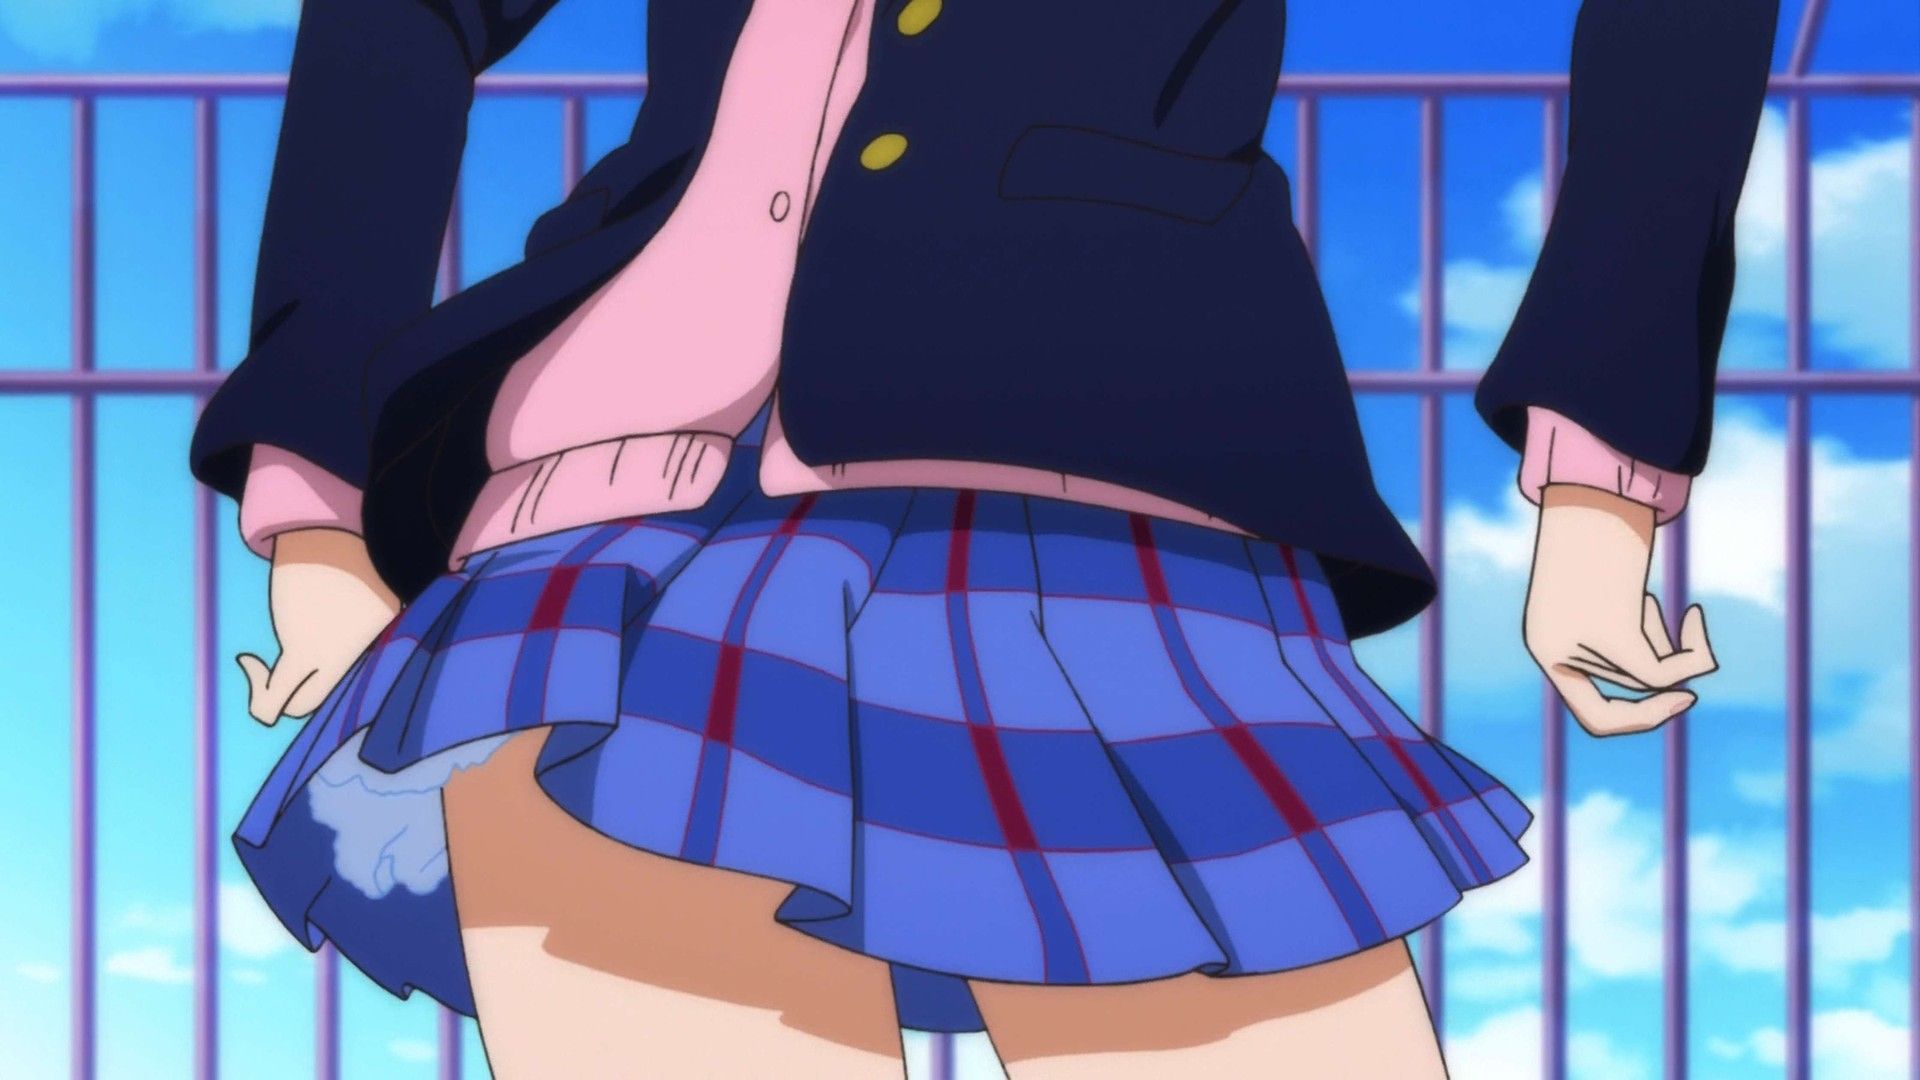 "Love live! "Yazawa smile-Chan?! one also pants feeling filthy girl wearing skirt seem abnormal wwwwww's 2